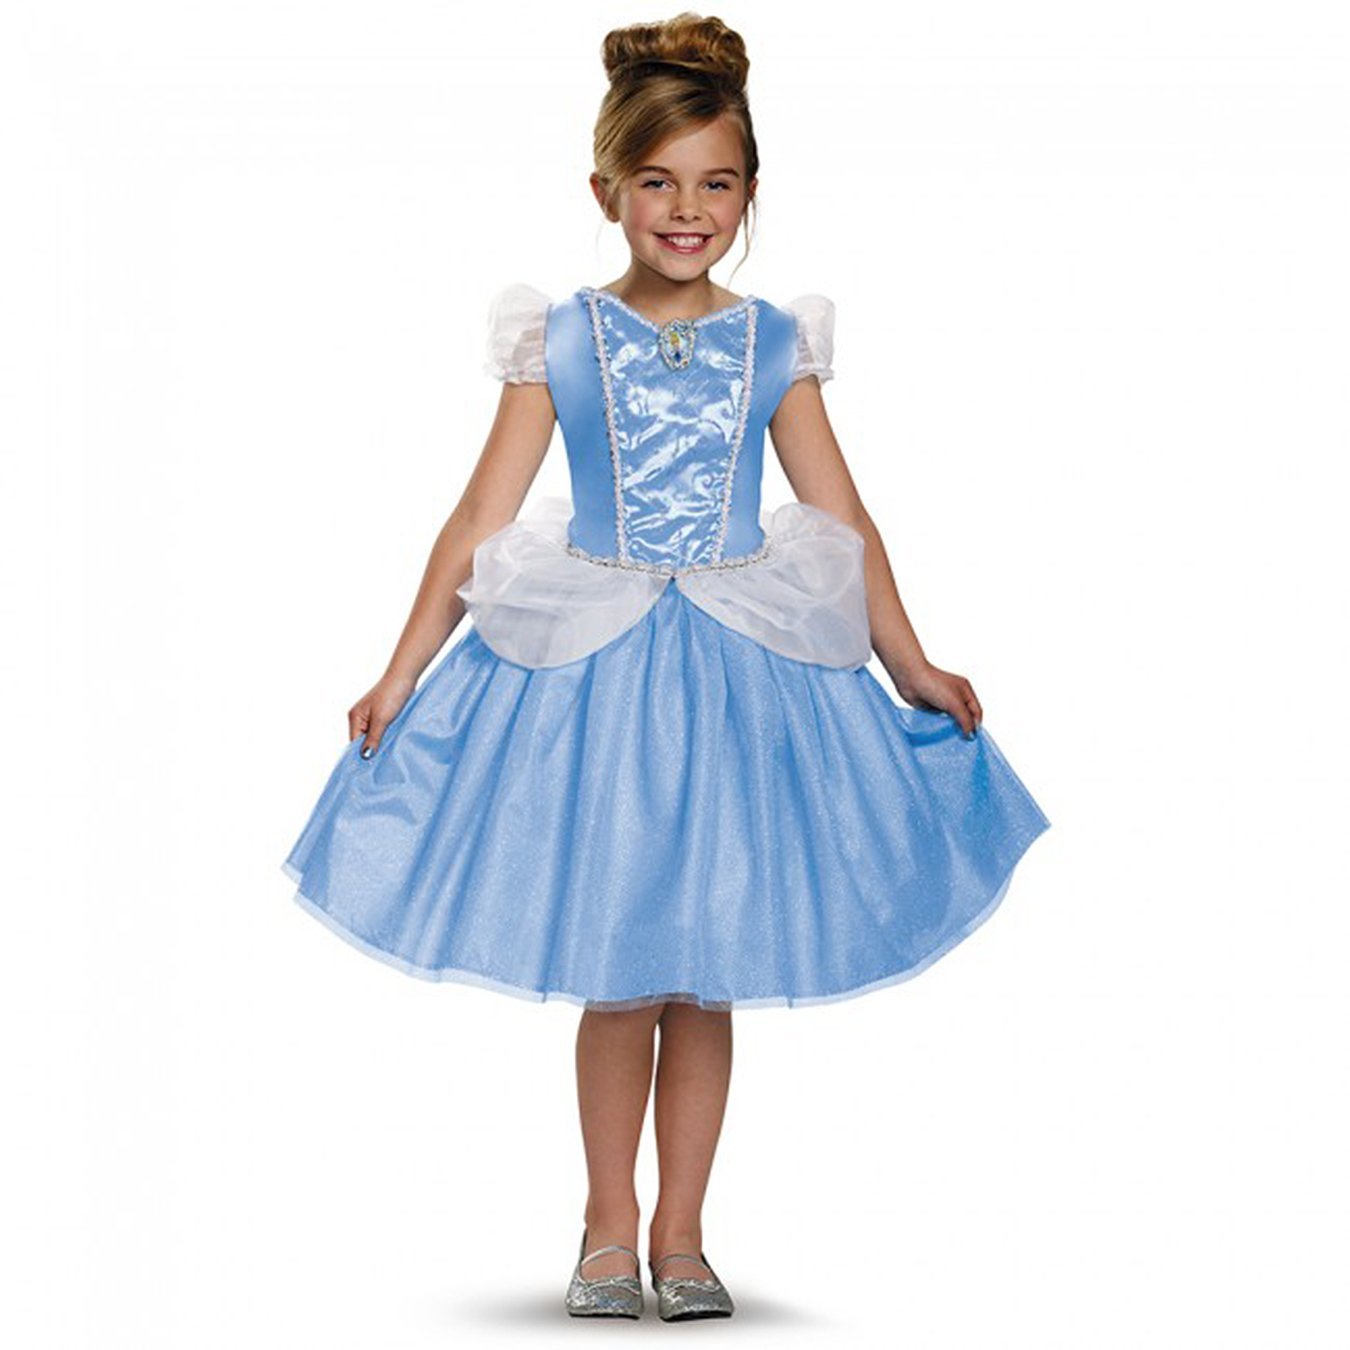 Cinderella Classic Disney Princess Cinderella Costume Medium 7-8